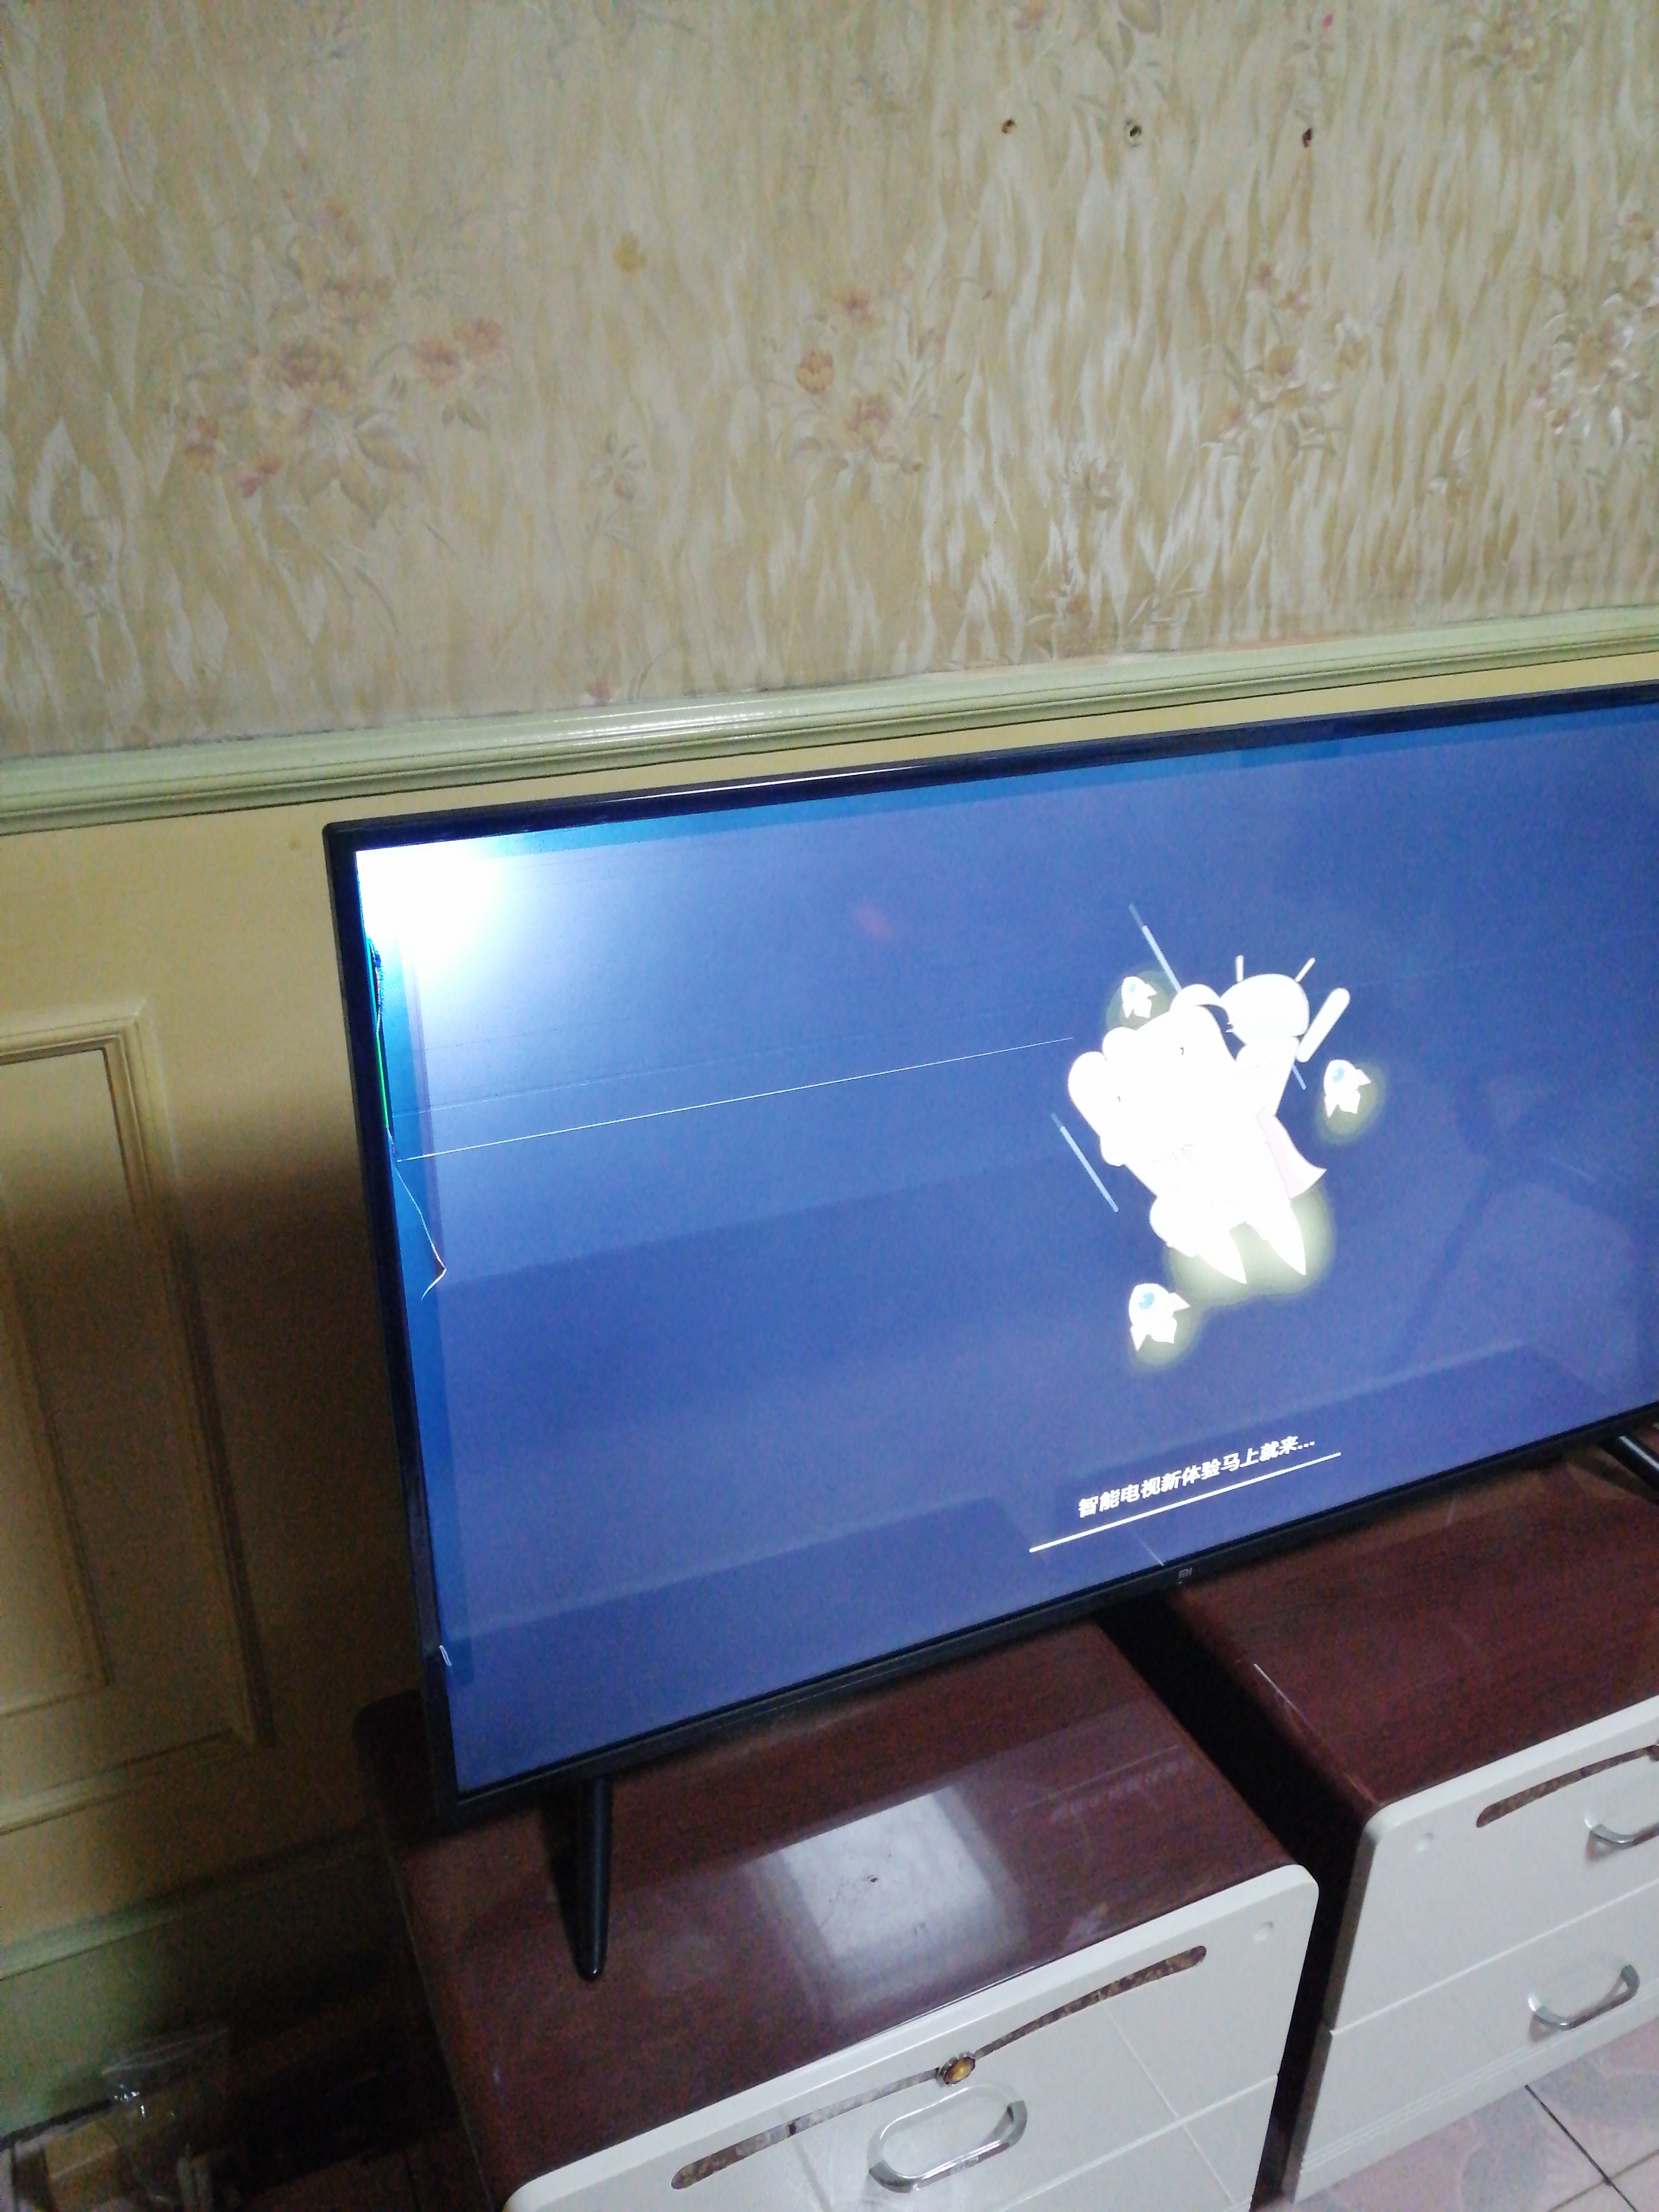 在苏宁易购购买的小米4a50寸电视机内屏破裂,与苏宁易购客服联系后,没